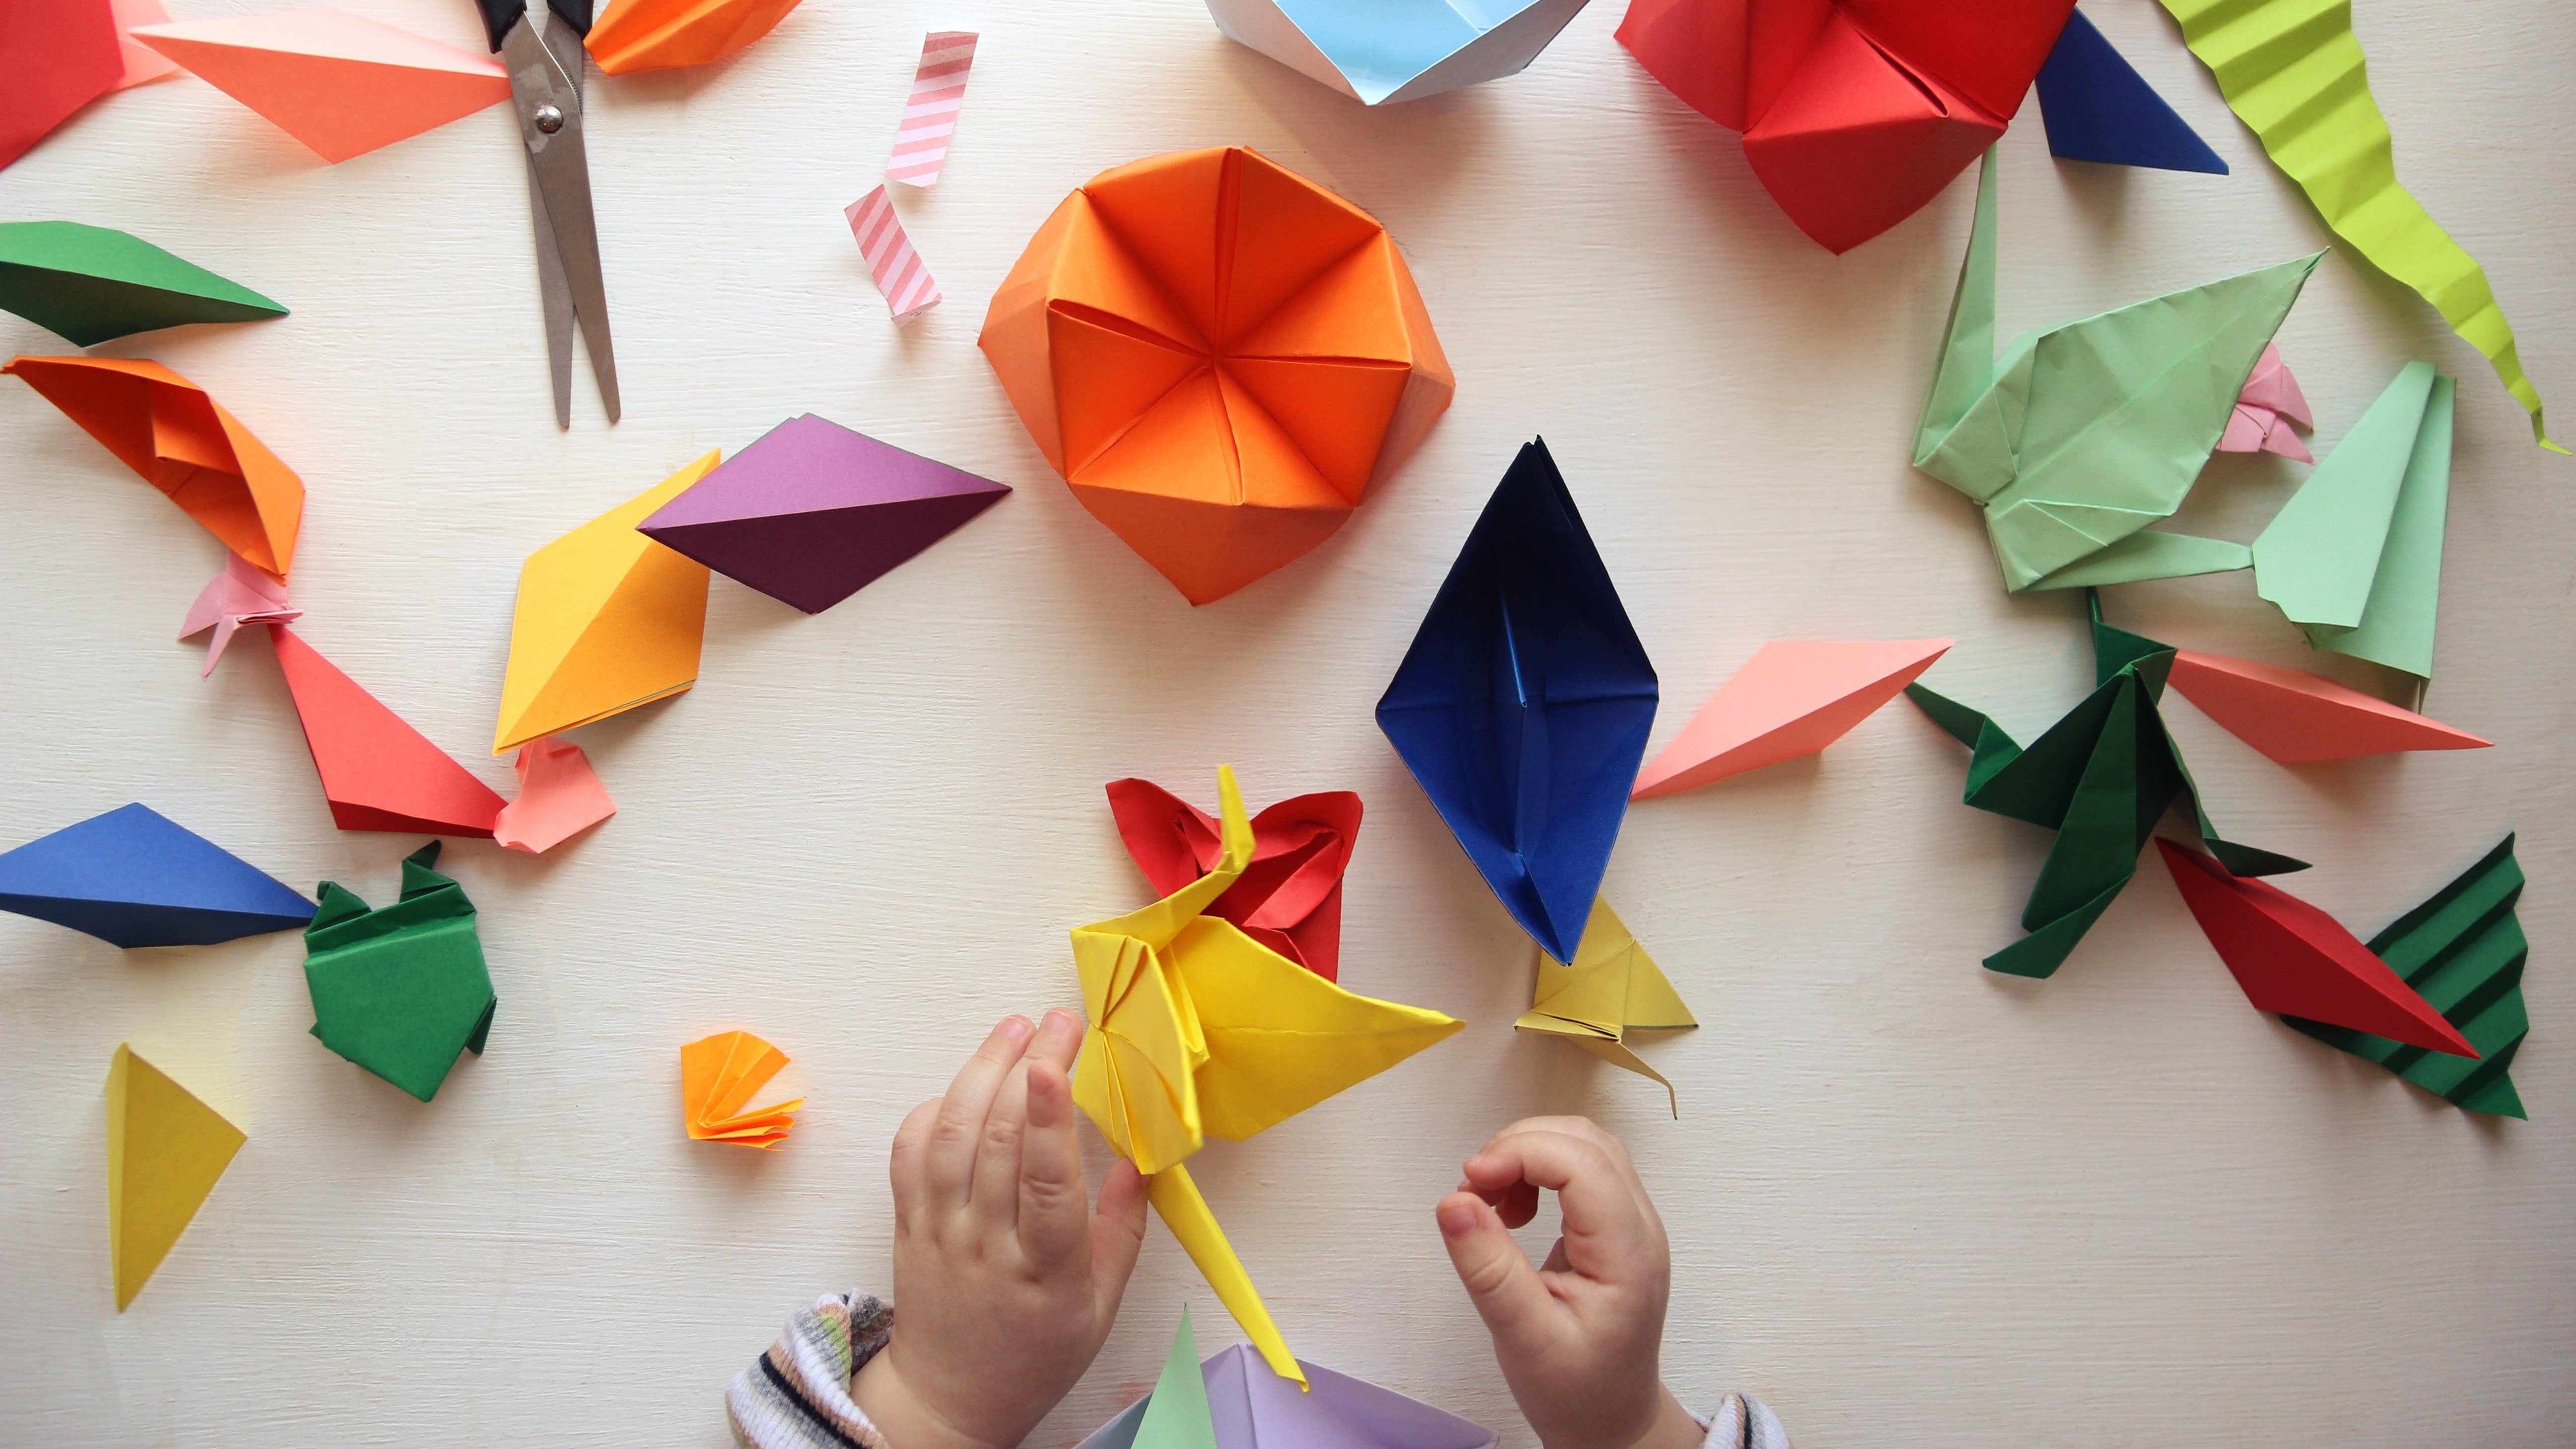 Mains d’enfant devant une table avec plusieurs origamis